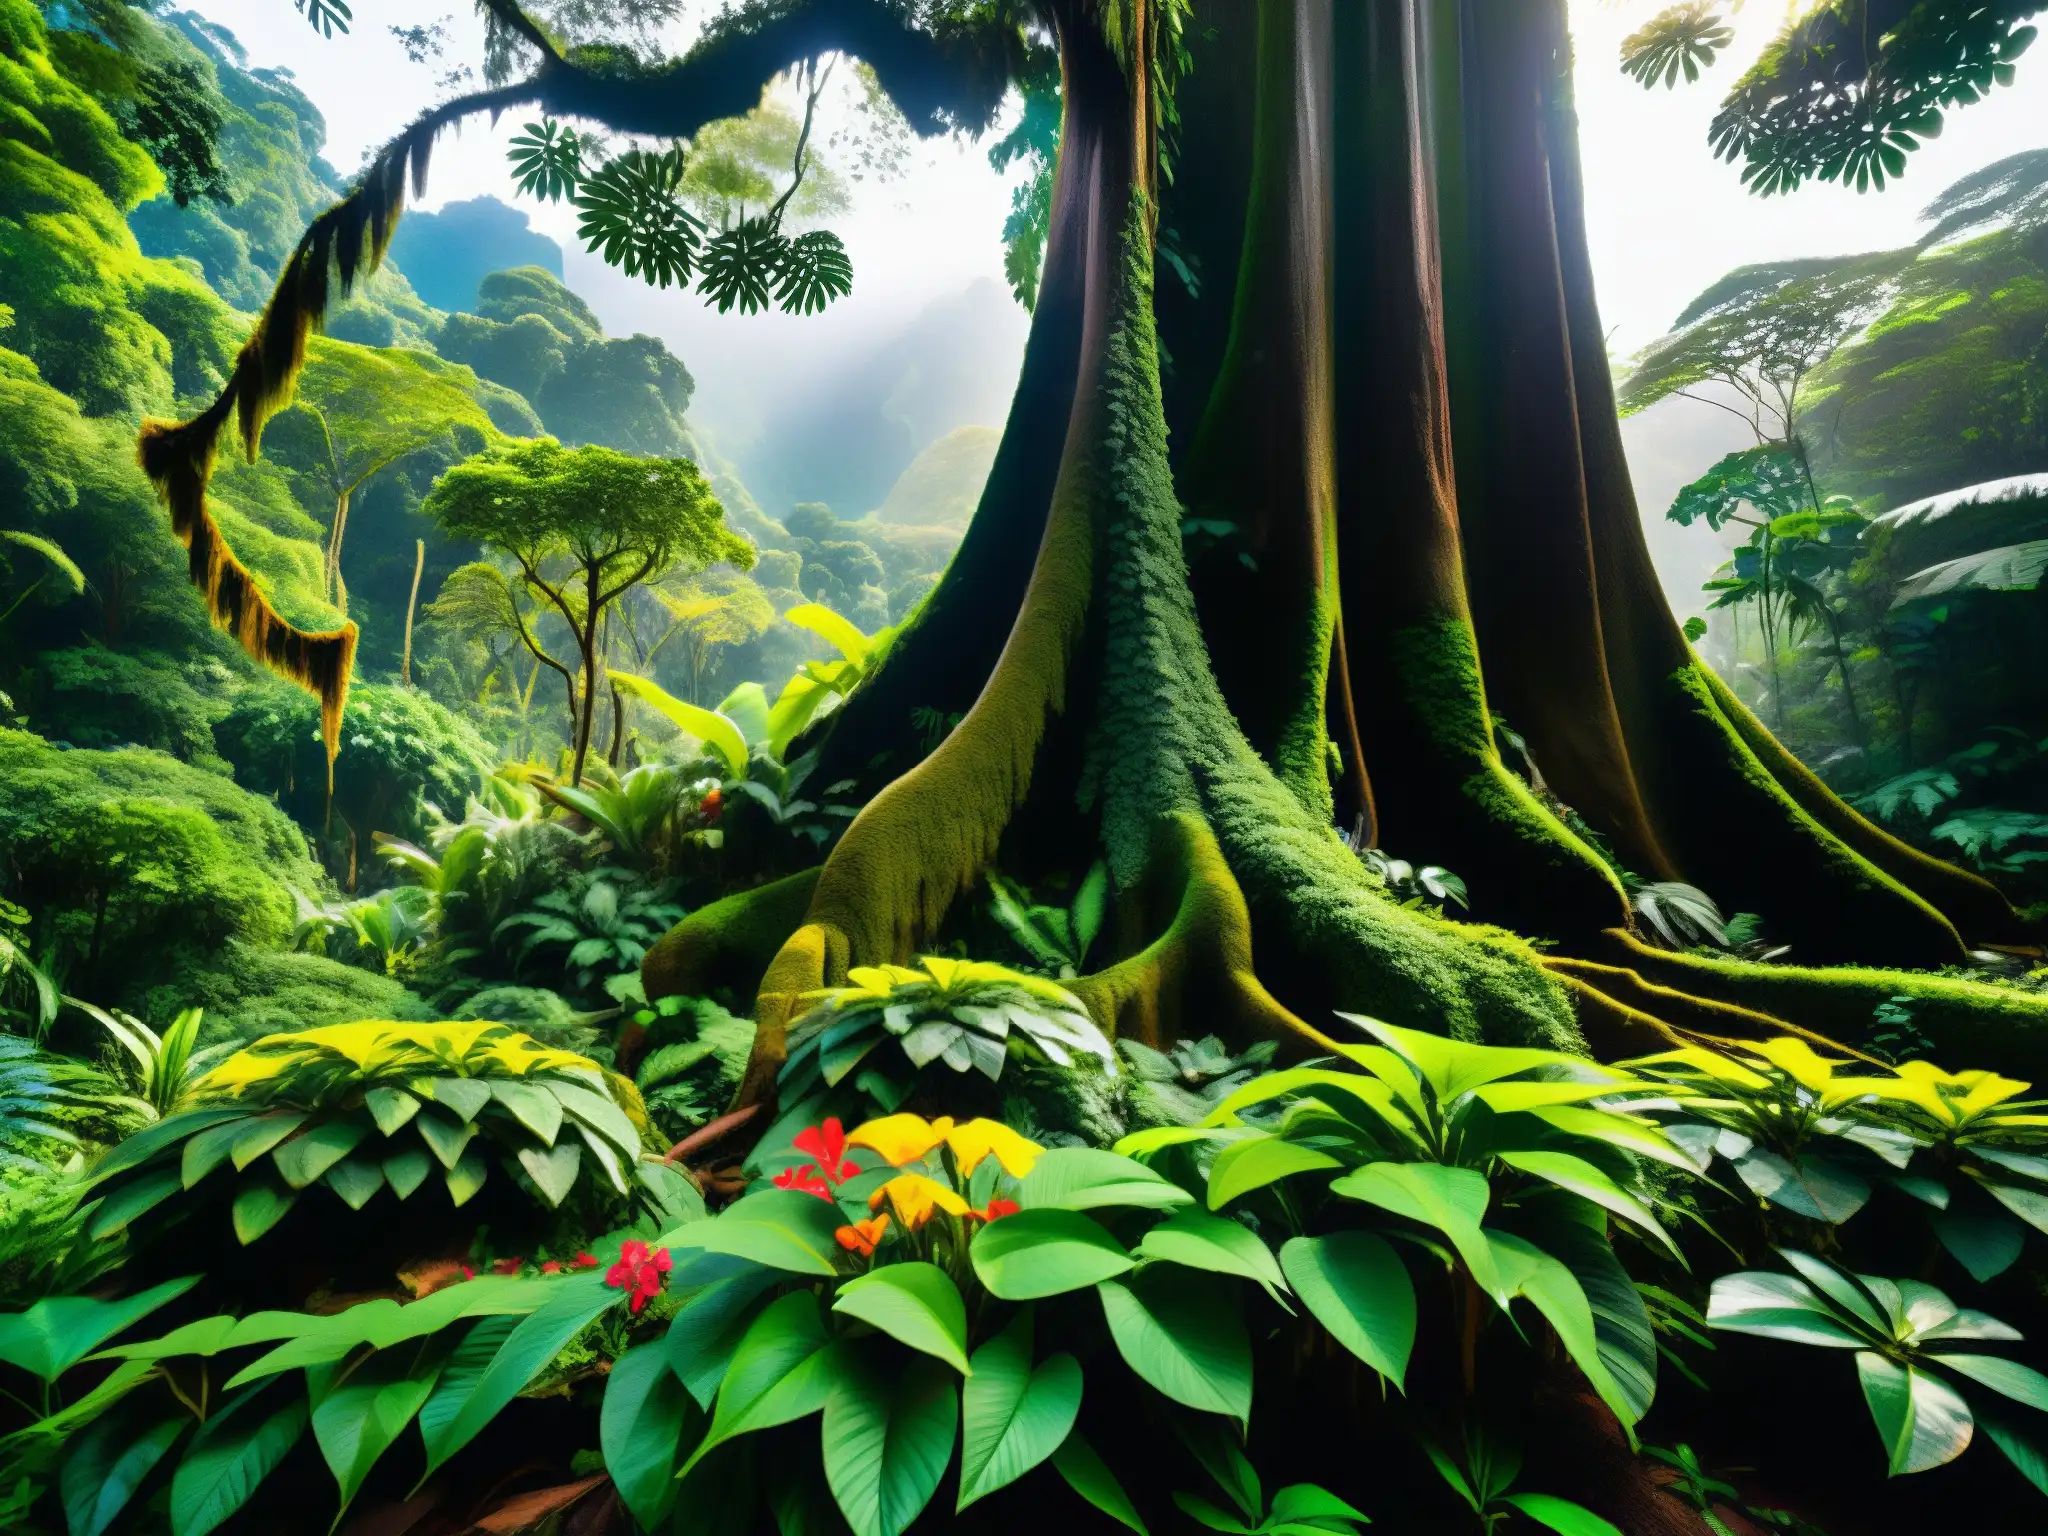 Un bosque encantado en Sudamérica, con duendes suramericanos asomándose entre la exuberante vegetación y la luz del sol filtrándose a través del dosel